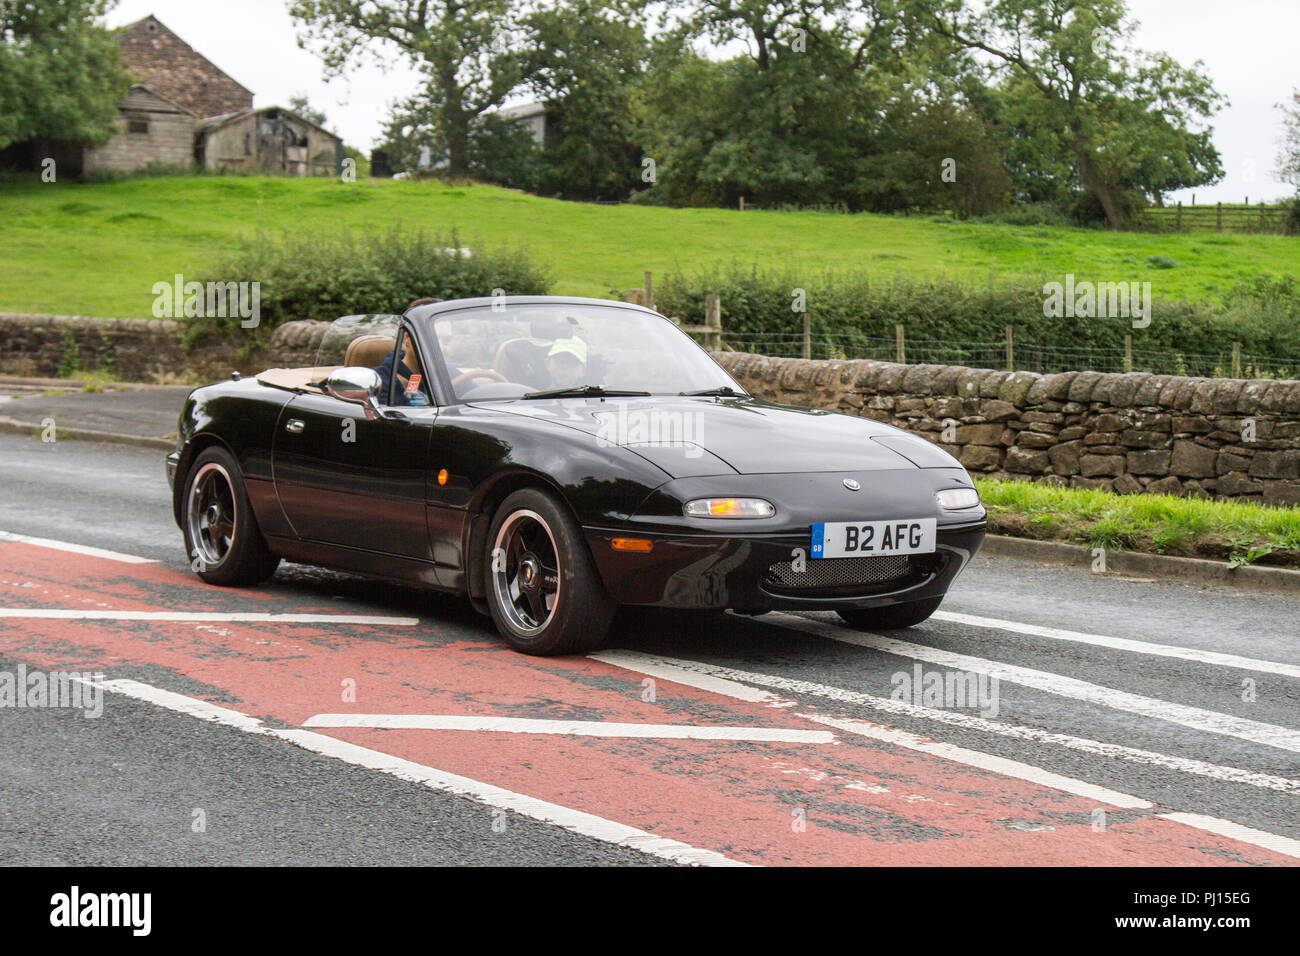 1995 90s Nineties noir Mazda MX-55, Roadster essence 1830 cc à Preston, UK Banque D'Images